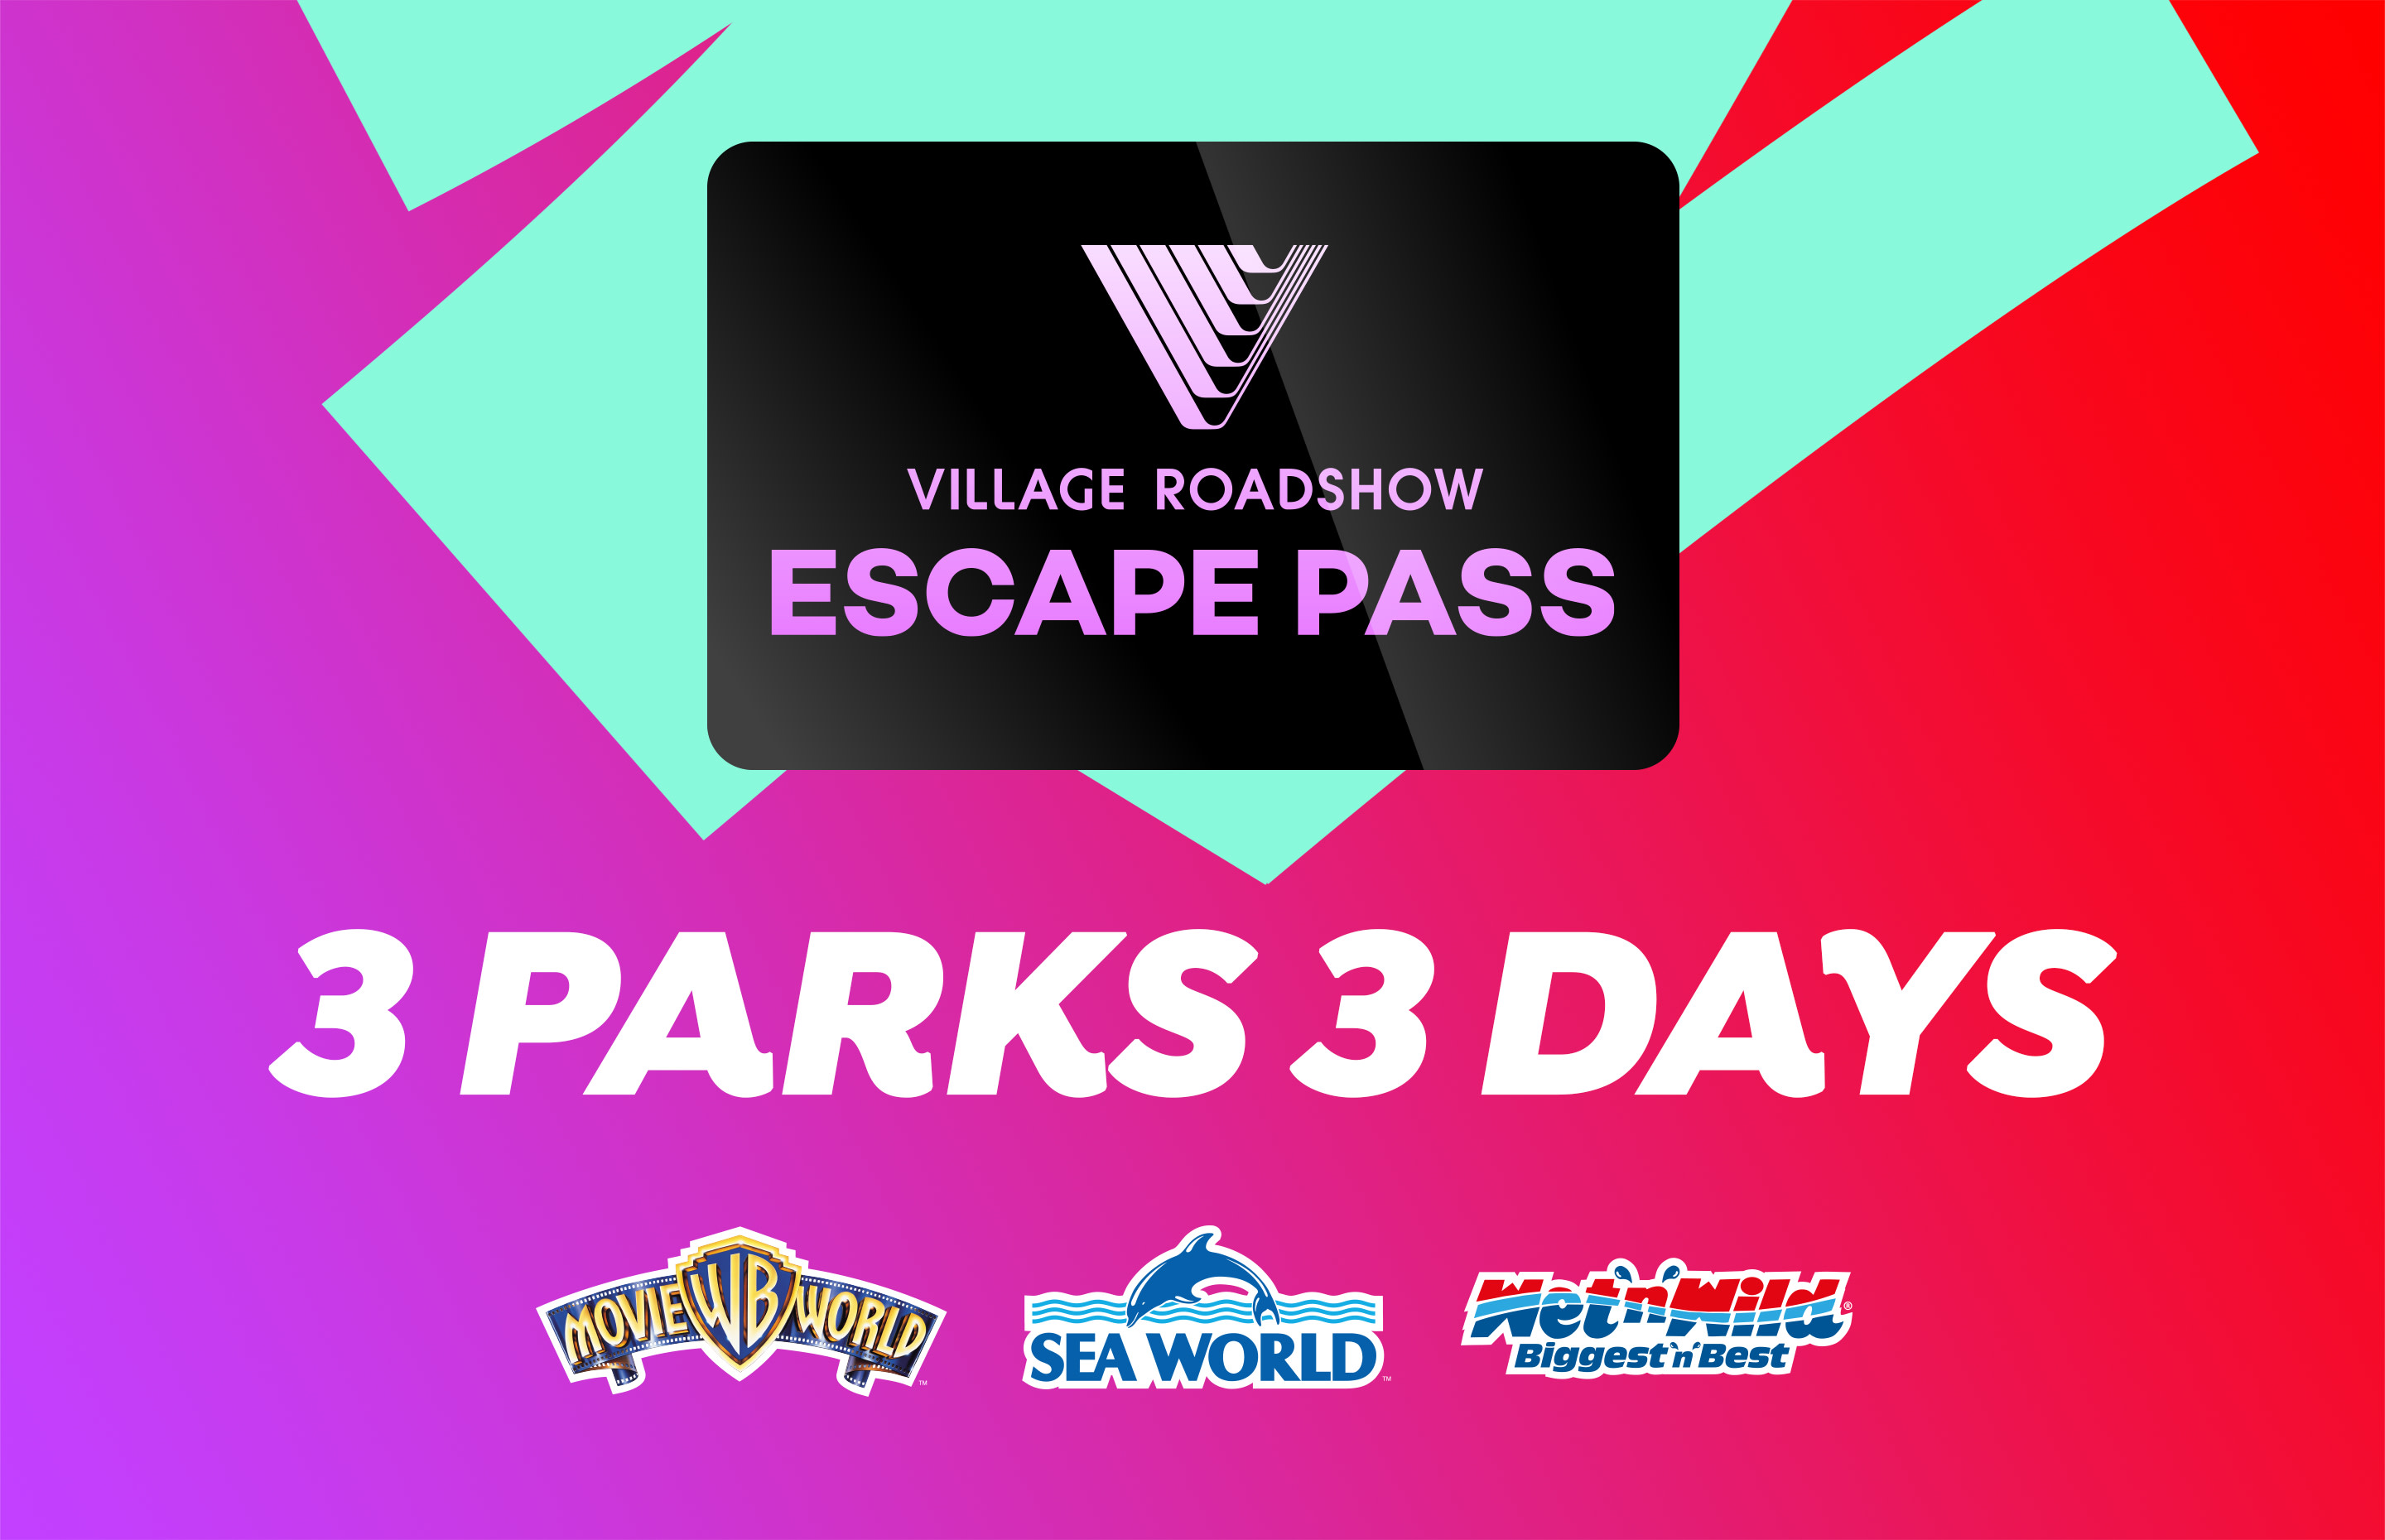 3 Day Escape Pass Warner Bros. Movie World, Sea World & Wet’n’Wild